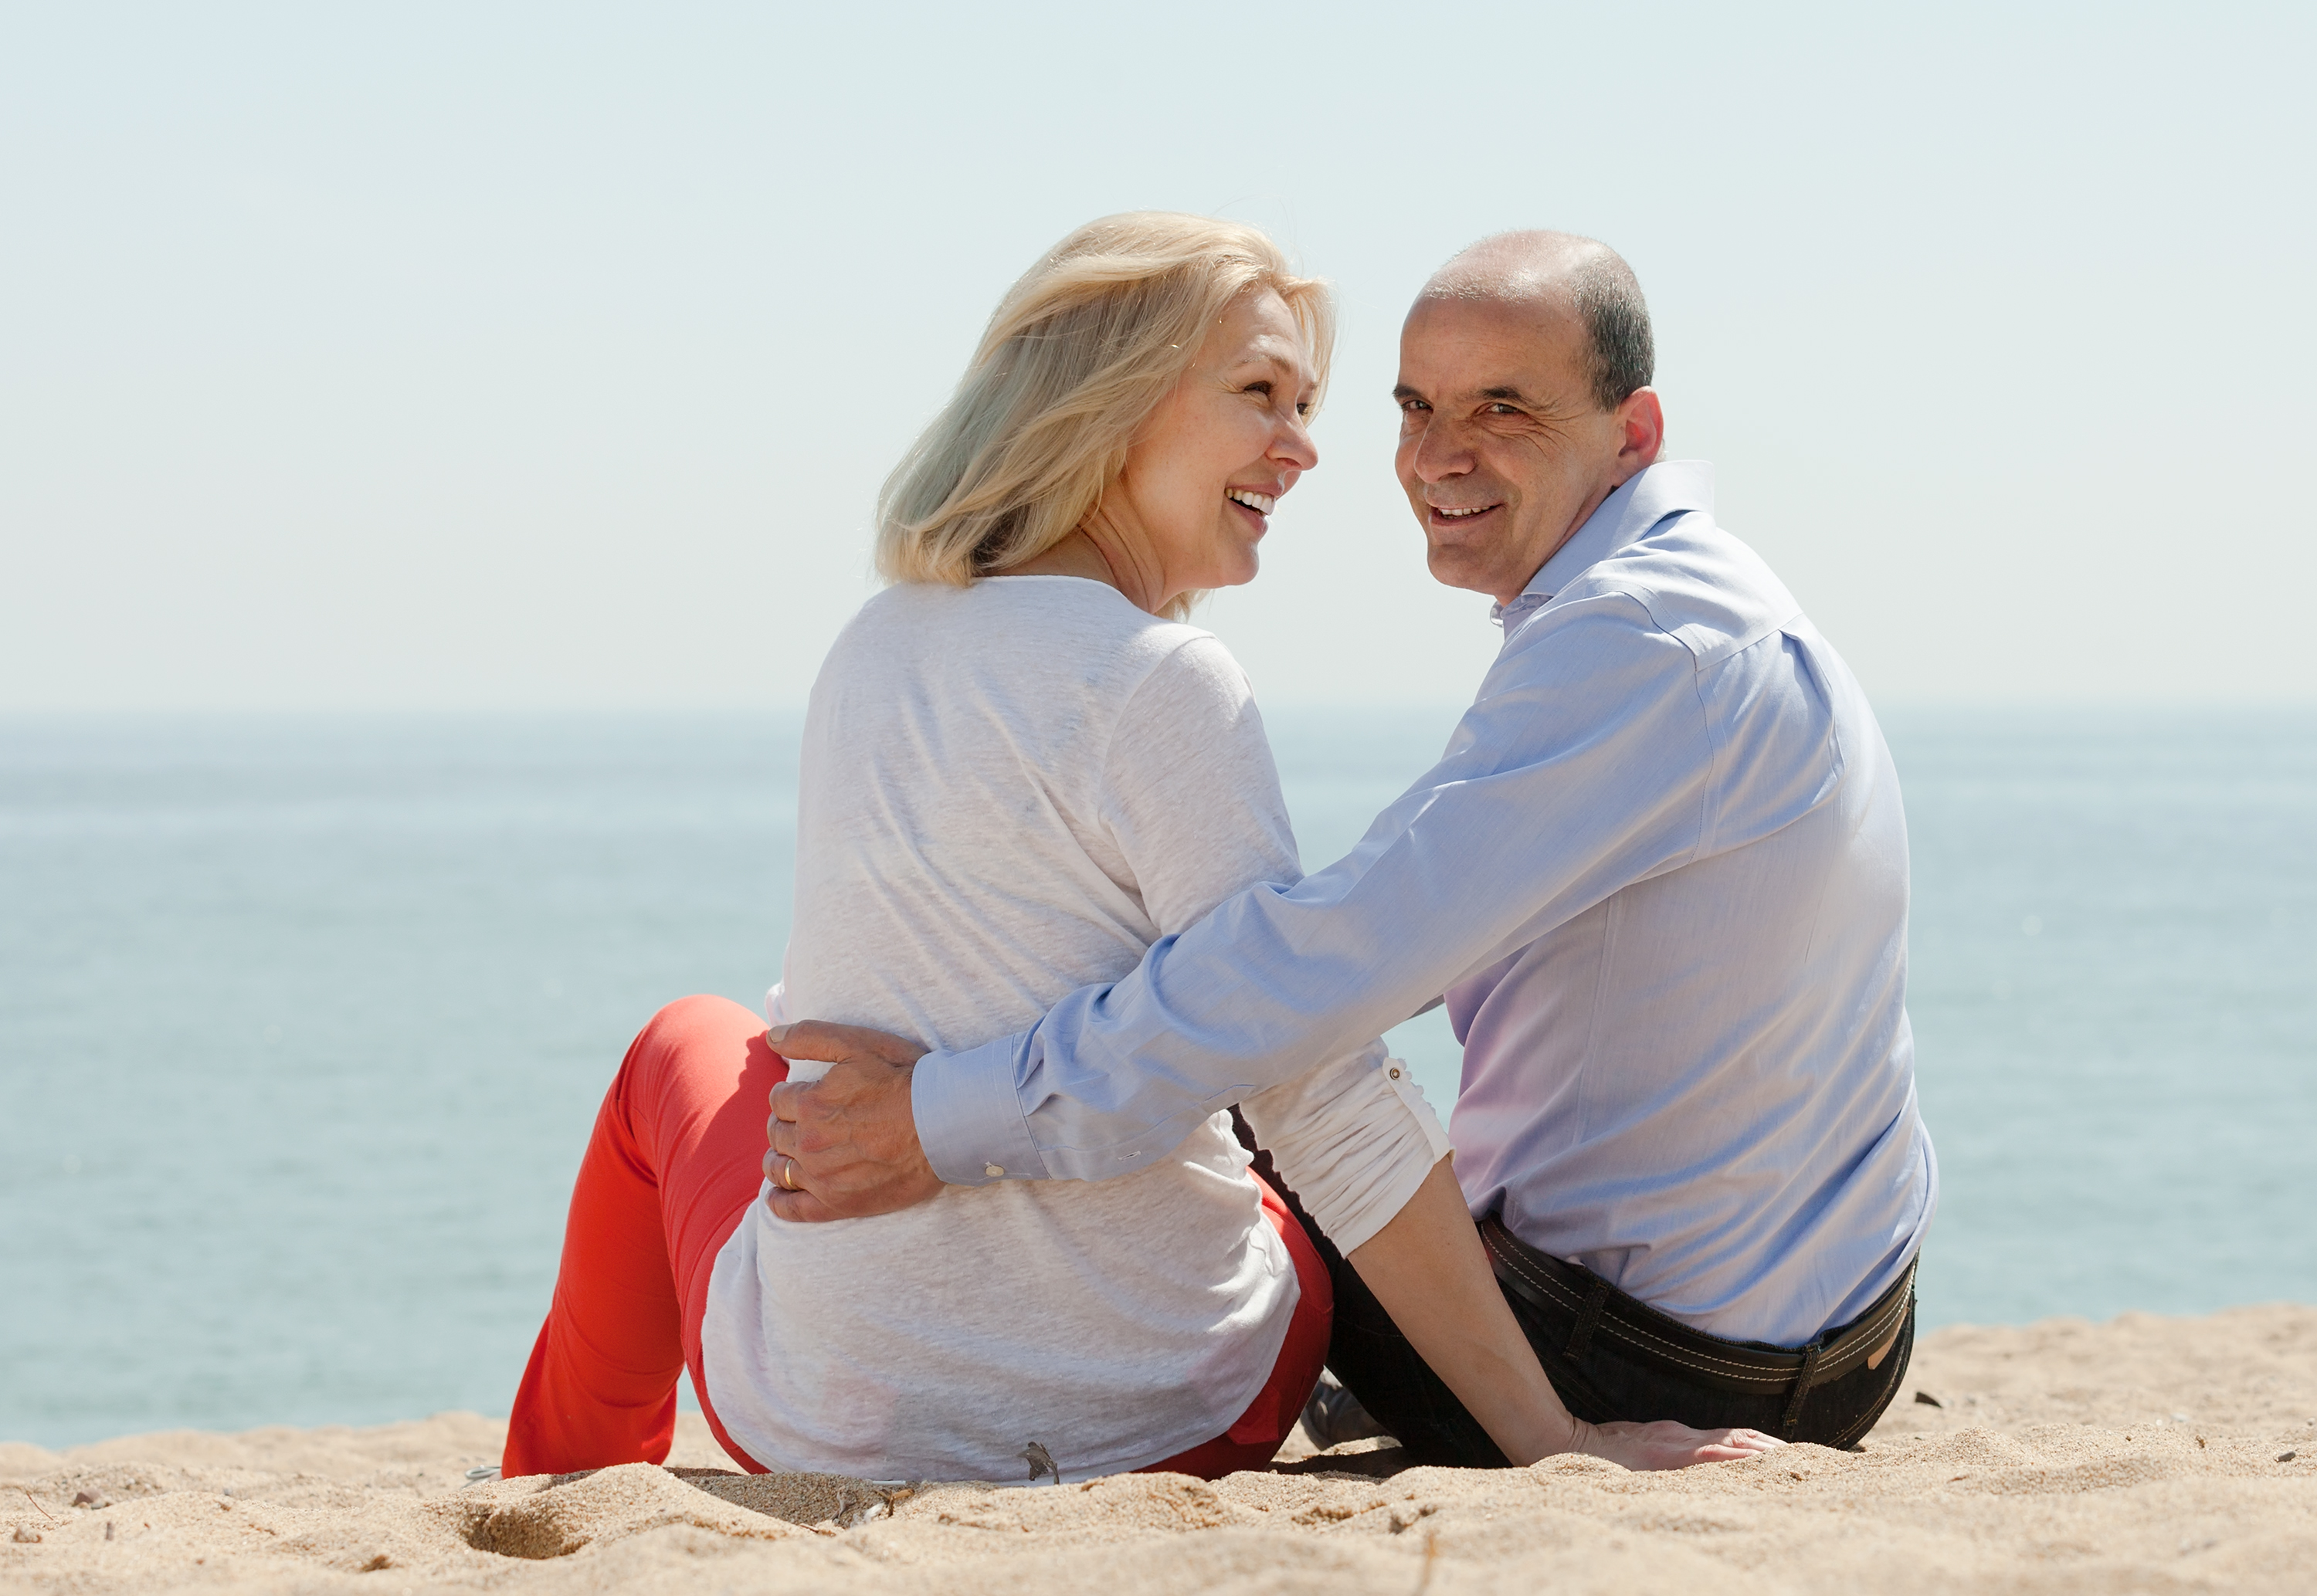 Relacionamentos amorosos e convívio social ativo aumentam a longevidade dos idosos